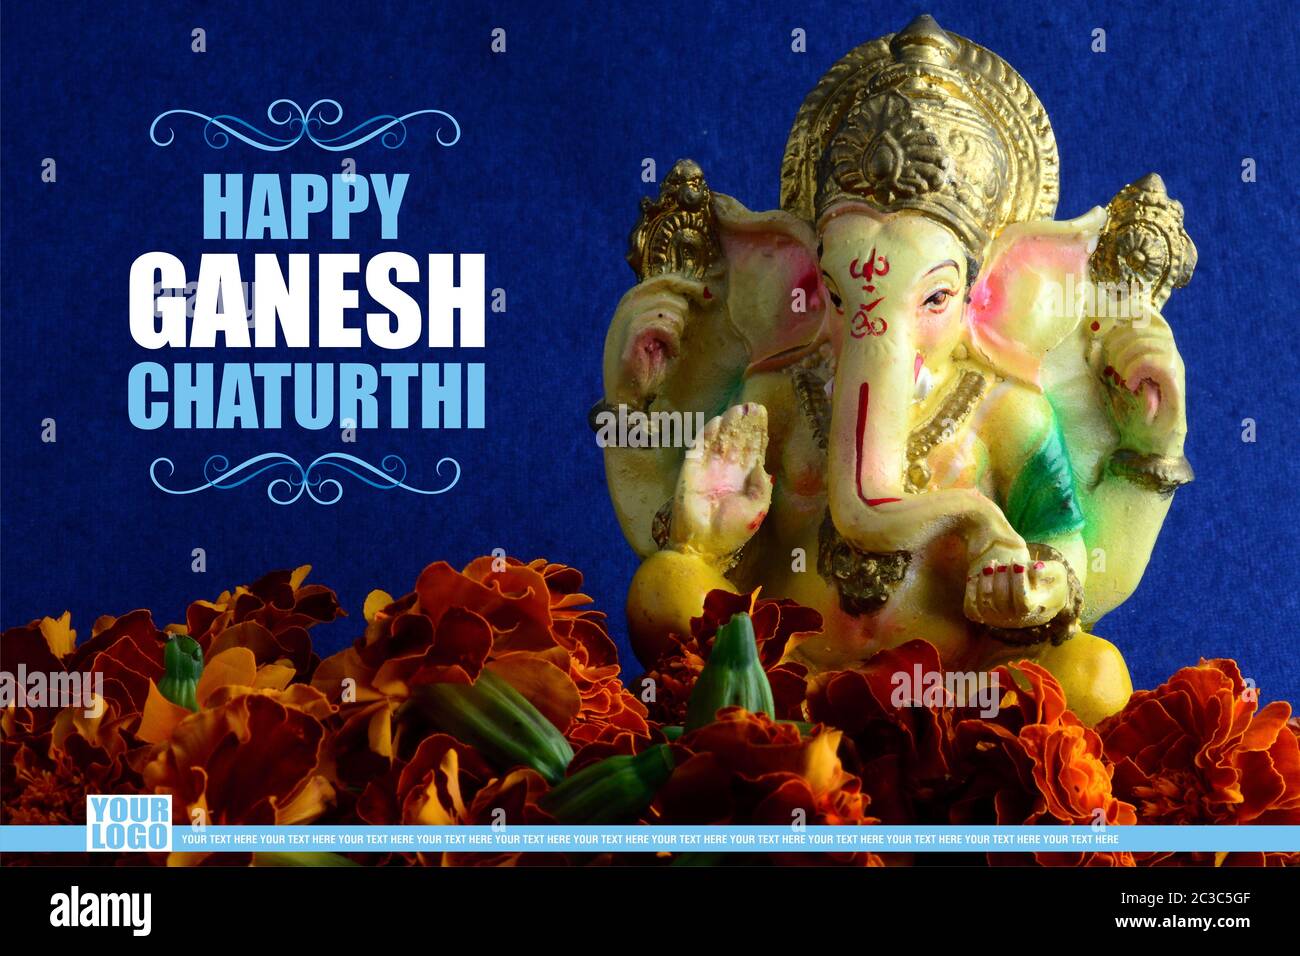 Happy Ganesh Chaturthi Greeting Card design with lord ganesha idol ...